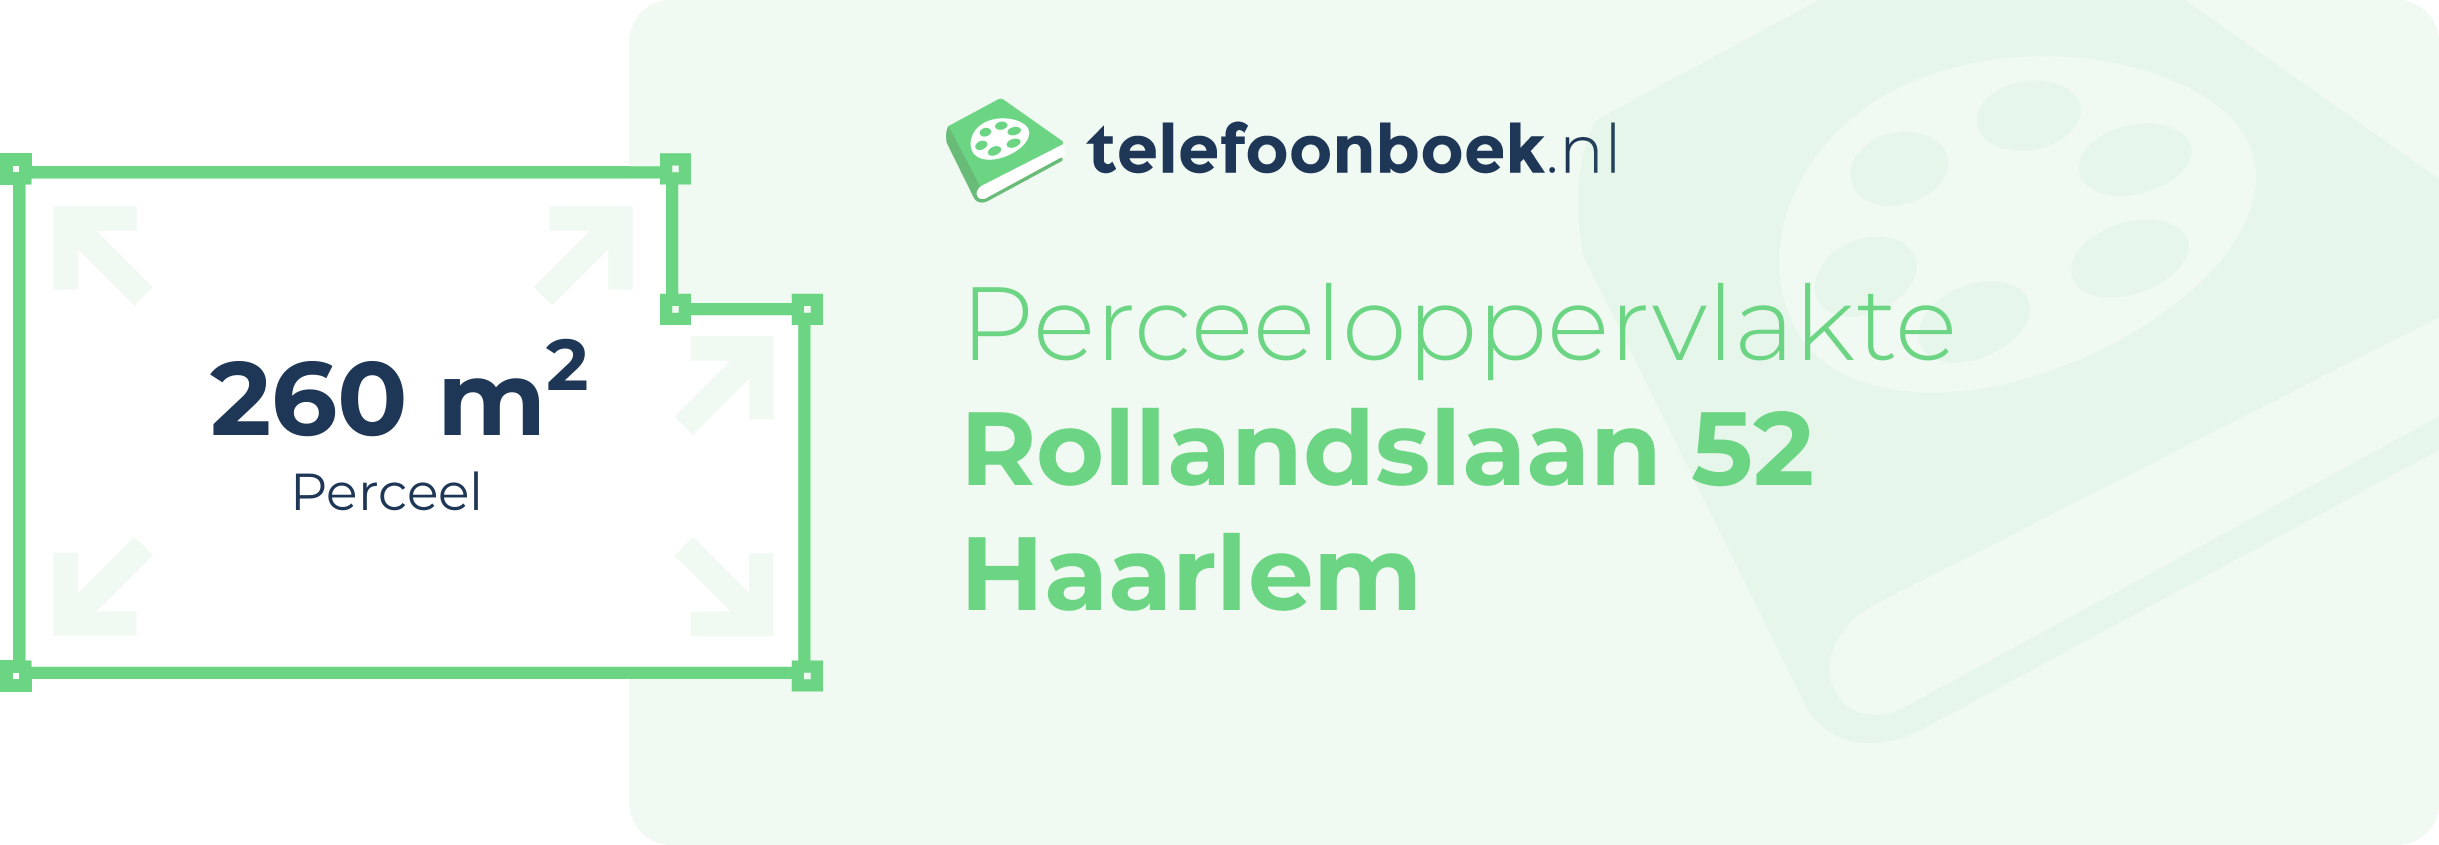 Perceeloppervlakte Rollandslaan 52 Haarlem